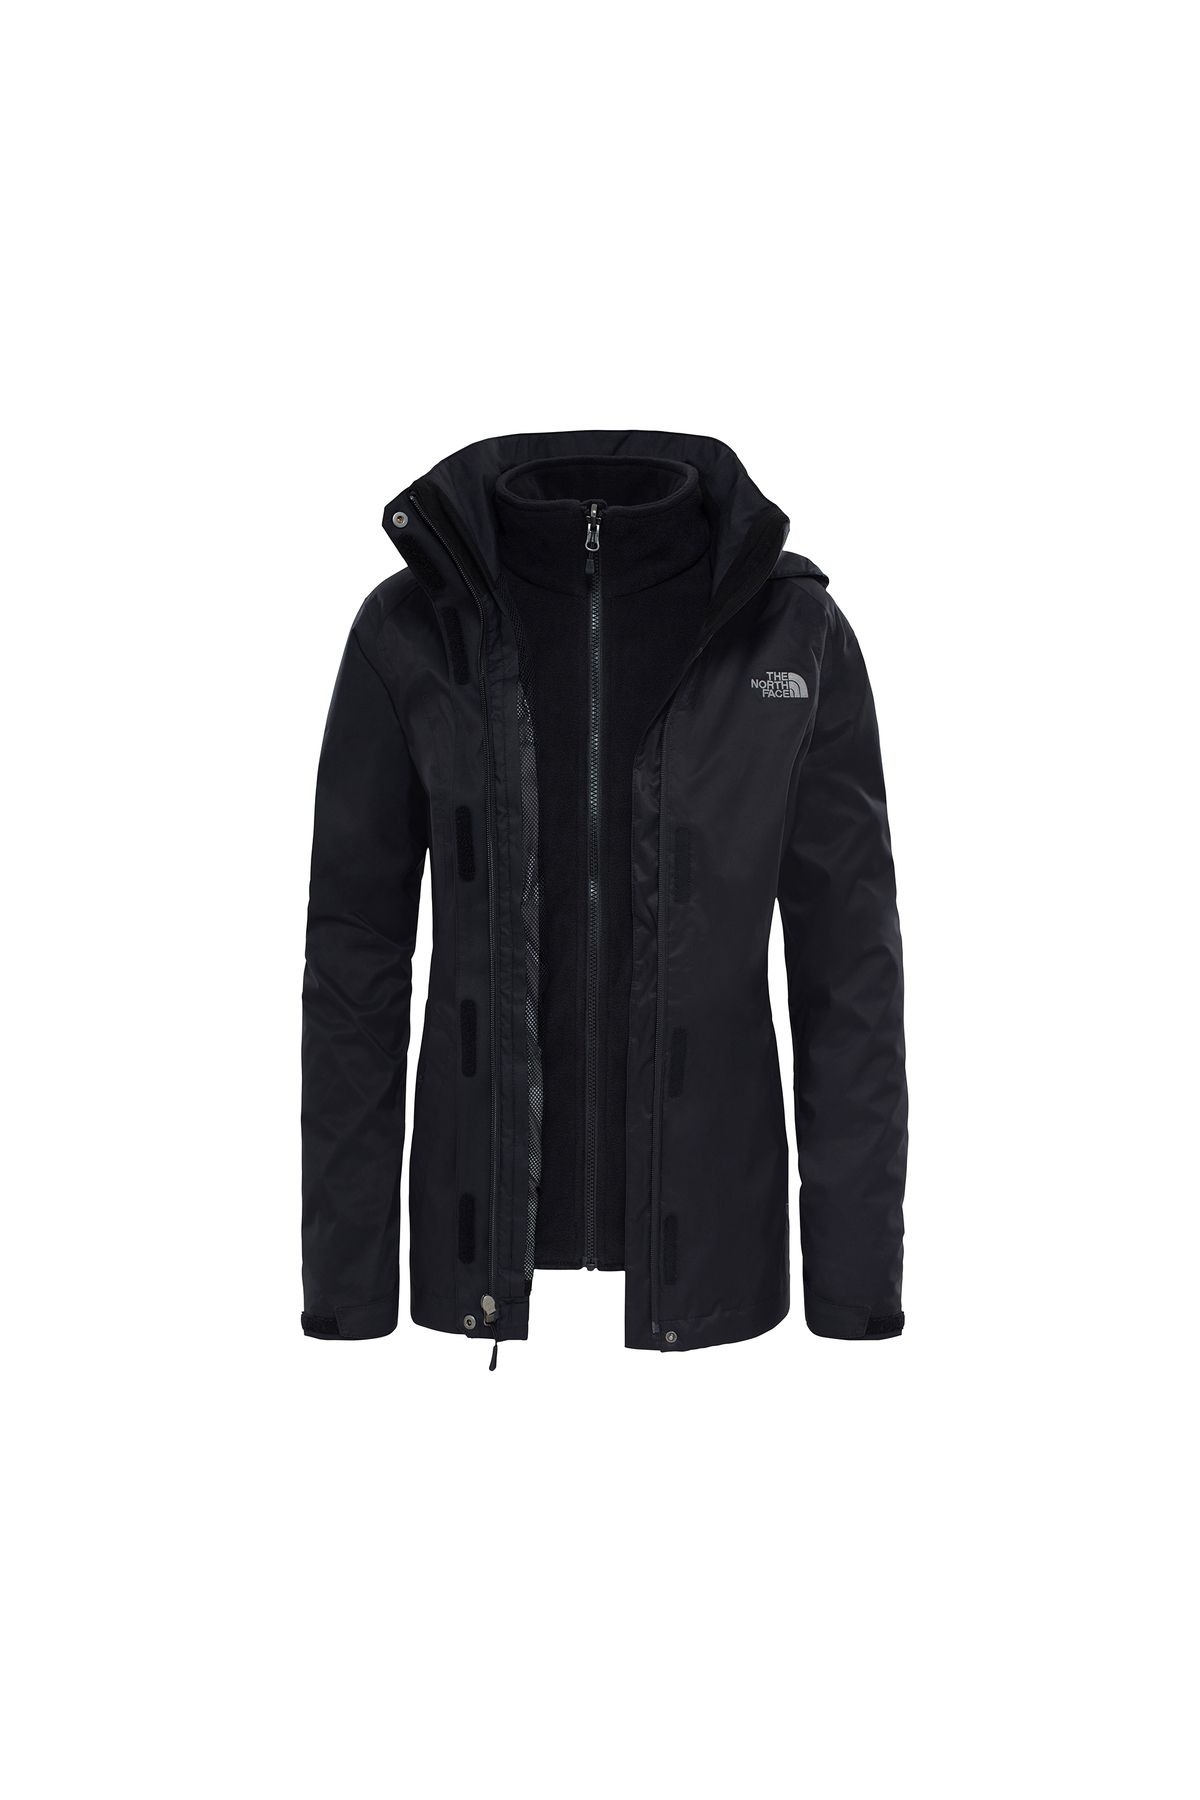 The North Face Evolve II Triclimate Jacket (DryVent Teknolojisi) Kadın Kışlık Outdoor Montu Siyah